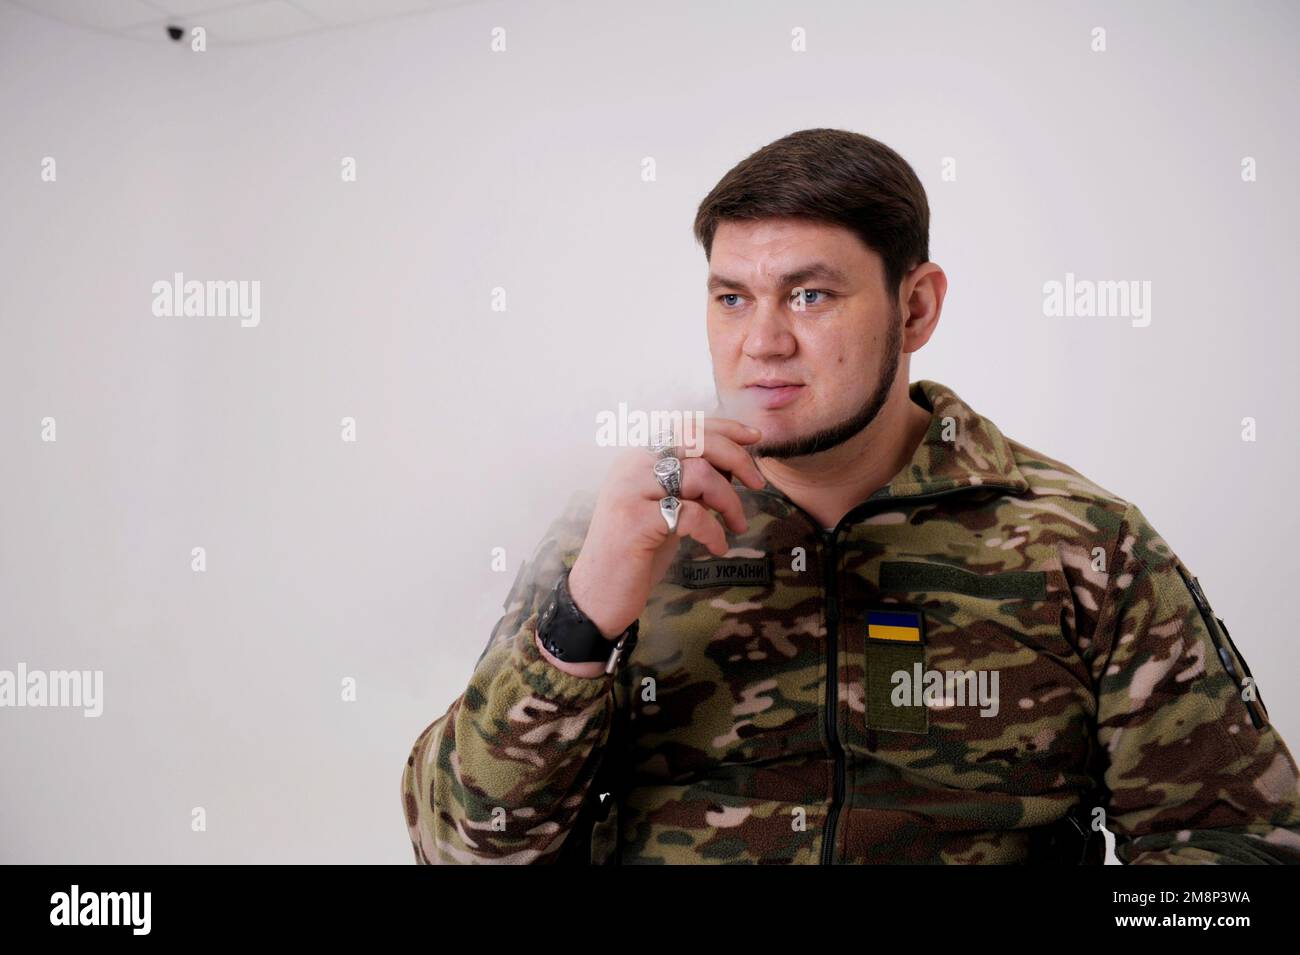 Militärmann in Uniform sitzt und raucht Er atmet Rauchpuppen aus Er hat Ringe an seinen Fingern Emblem der Ukraine die ukrainische Flagge ist auf Schutzjacke genäht Erwachsener attraktiver Mann 35 Jahre alt Stockfoto